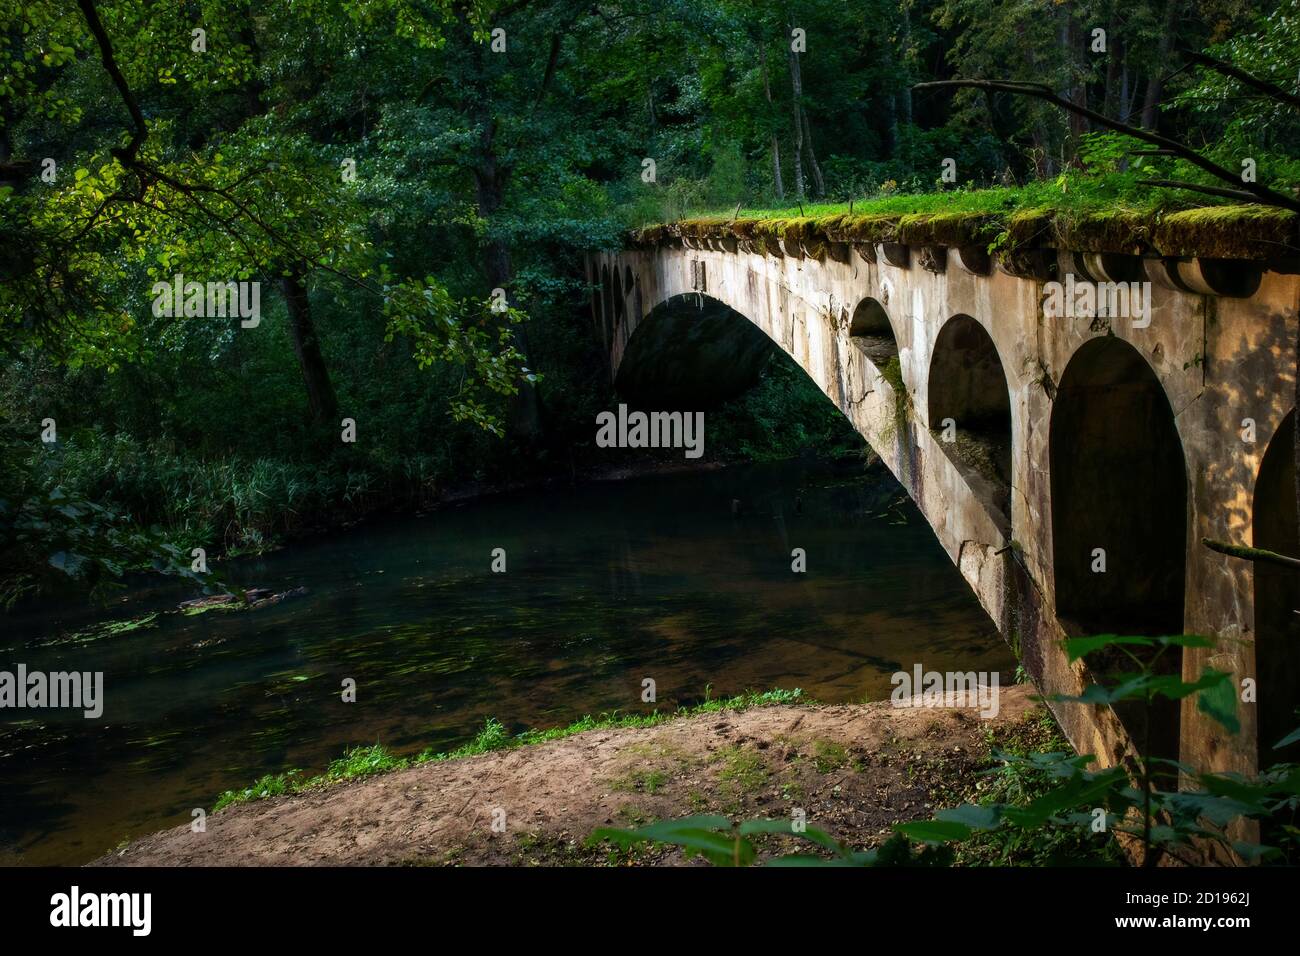 Vecchio ponte ad arco abbandonato su un fiume forestale. Ex ponte nuovo tedesco (Neue Brucke) nella regione di Kaliningrad, Rominta/Redwood Foto Stock